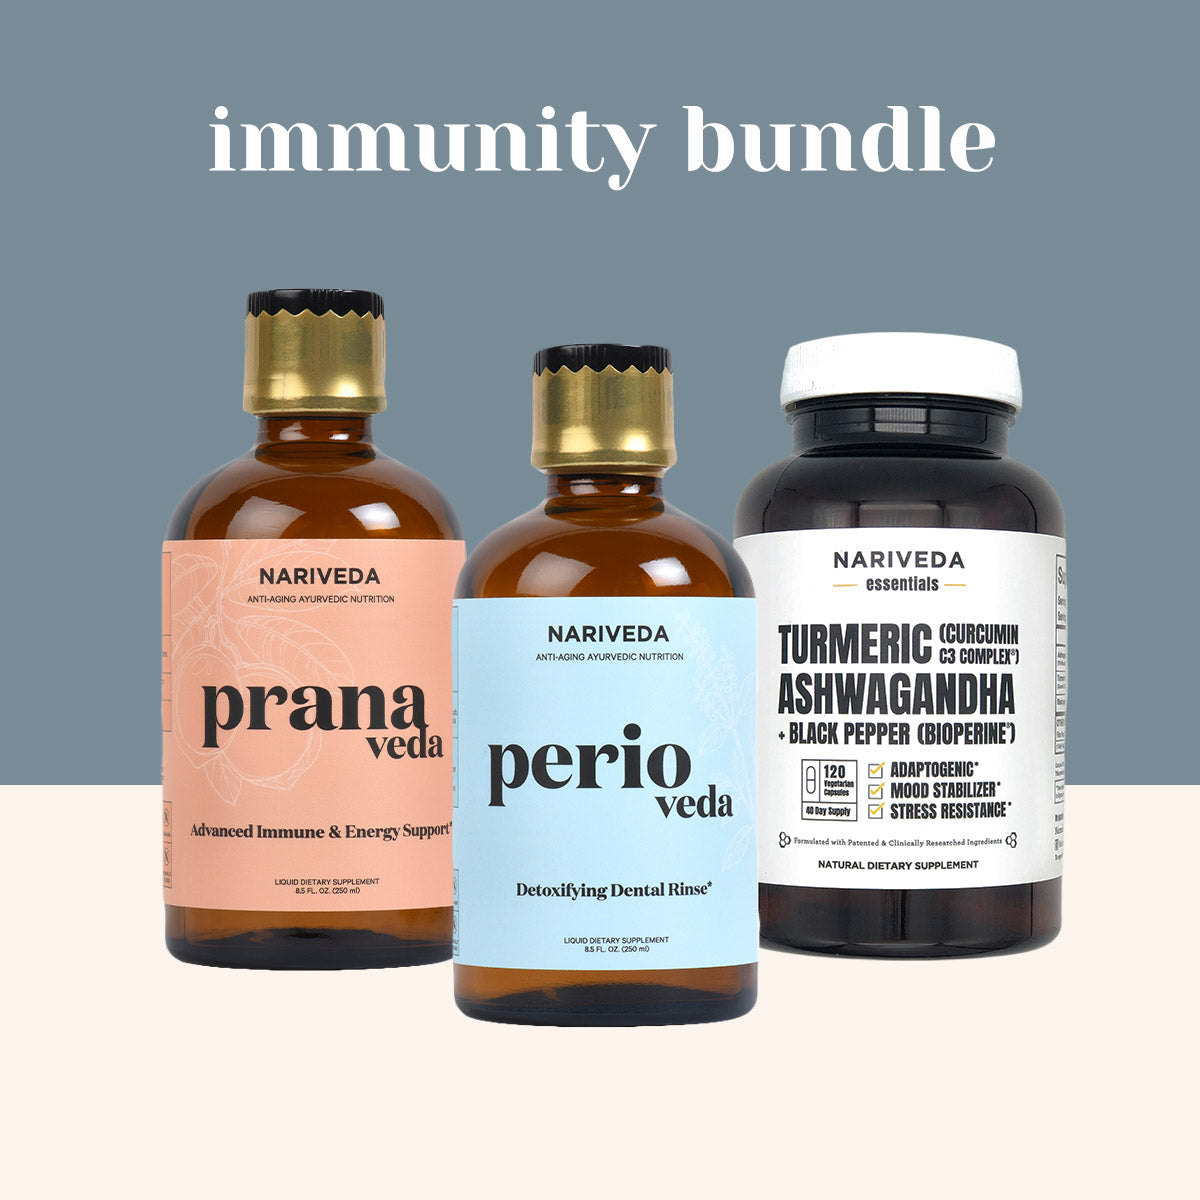 Immunity Bundle